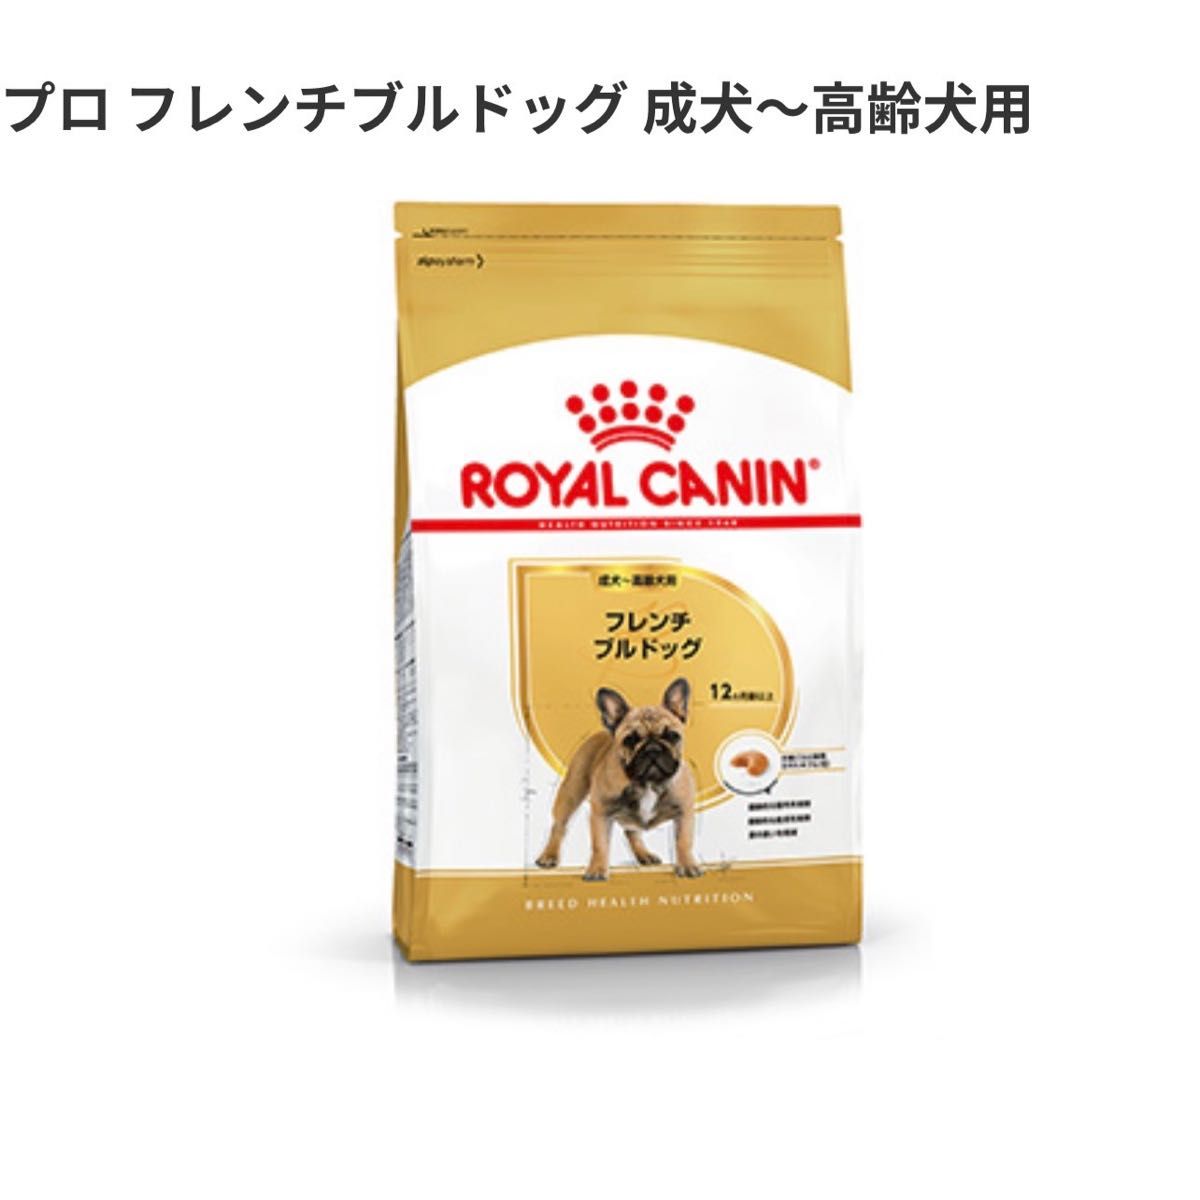 ロイヤルカナン フレンチブルドッグ成犬9kg birdmiyuki3.wpx.jp